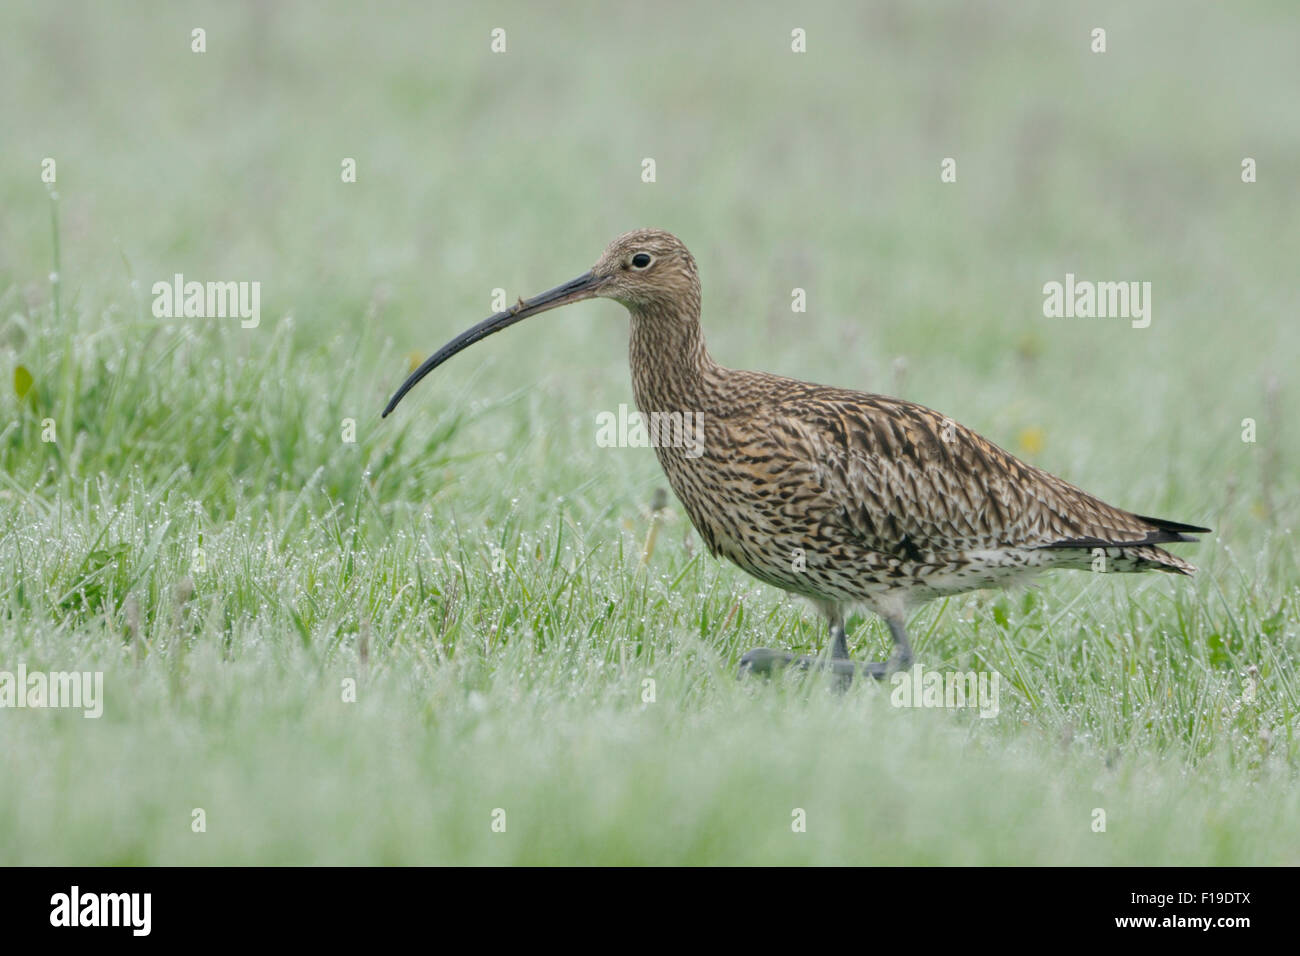 Rara zarapito euroasiático / Grosser Brachvogel ( Numenius arquata ) caminando a través de la hierba húmeda de rocío para buscar comida. Foto de stock